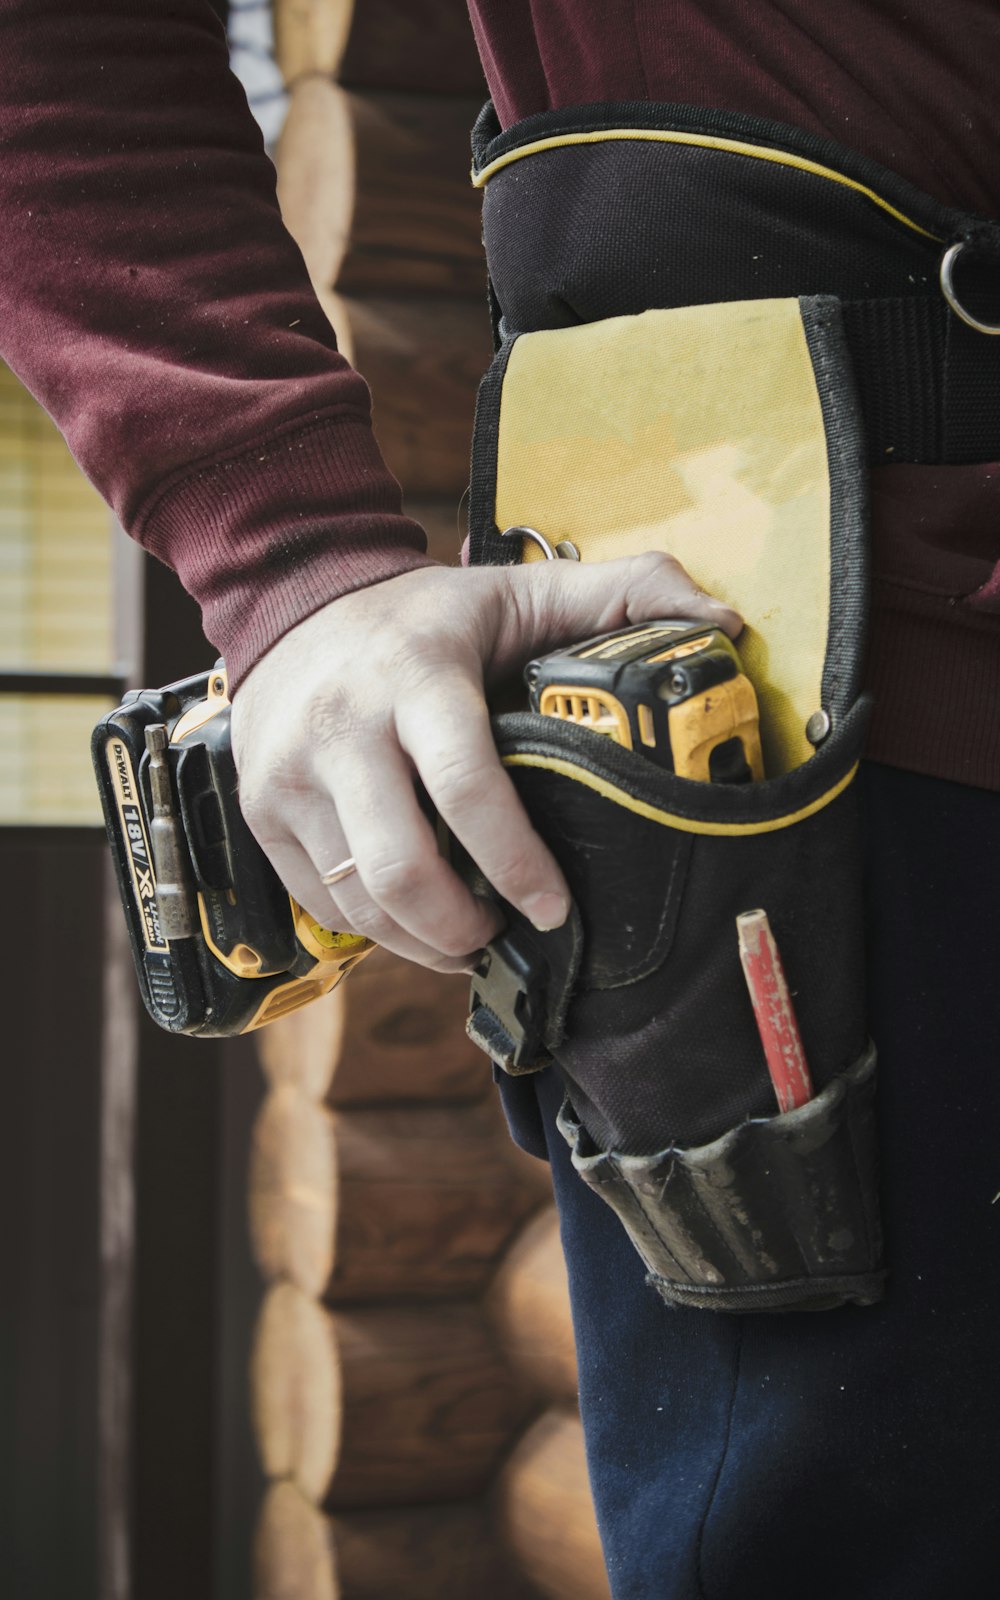 Persona in possesso di guanti nike neri e gialli foto – Industriale  Immagine gratuita su Unsplash